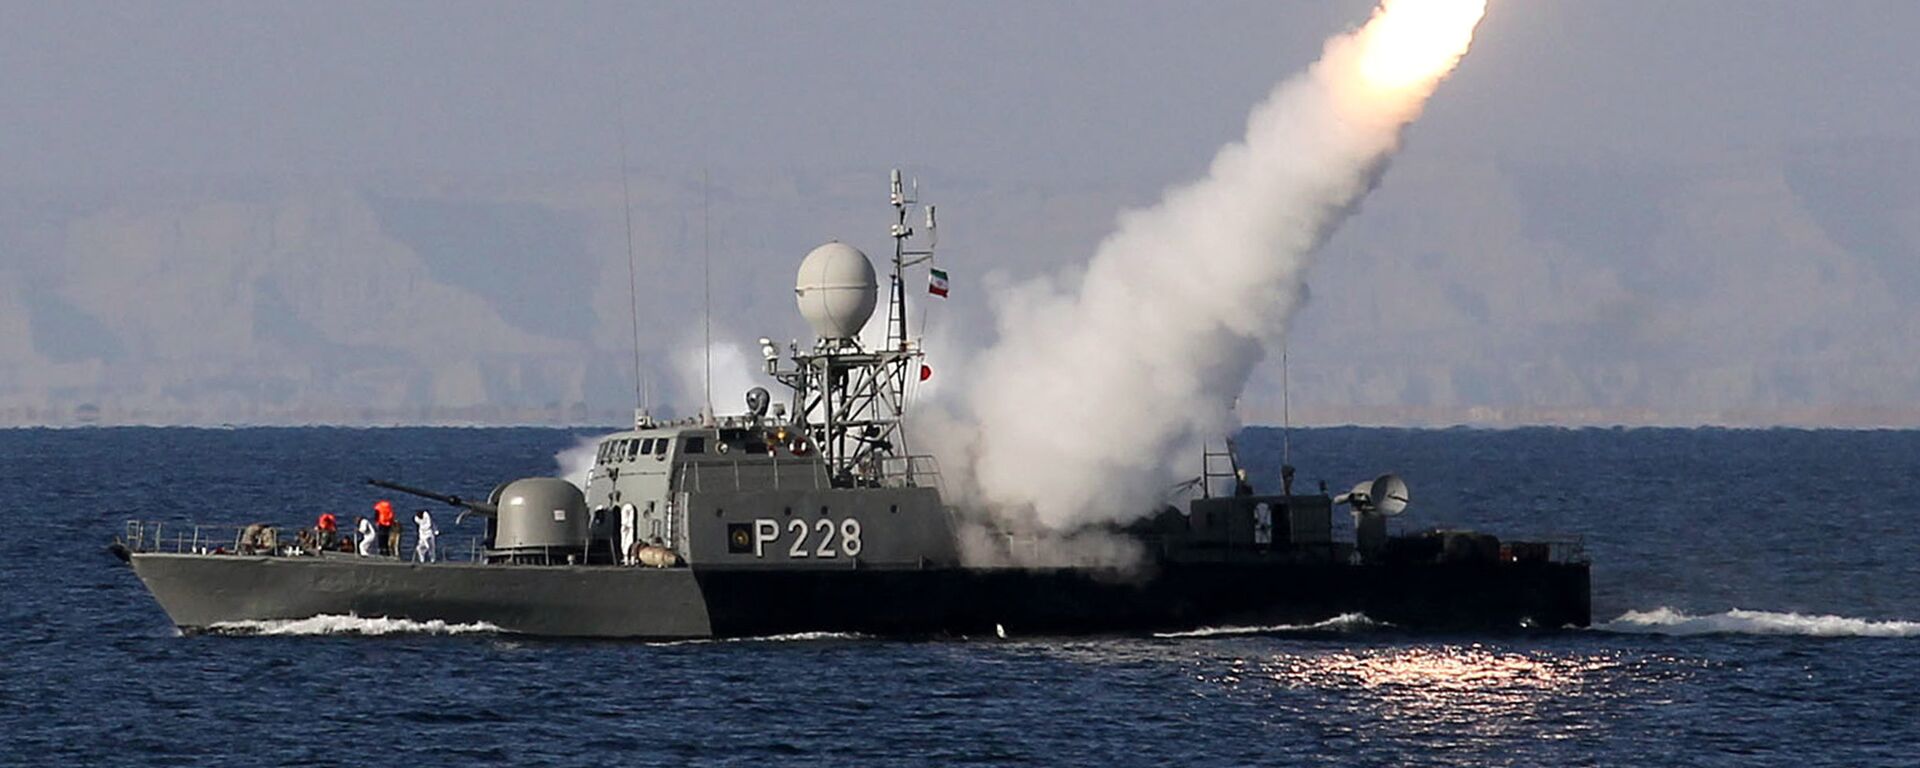 La armada iraní dispara un misil Mehrab durante las maniobras navales en el estrecho de Ormuz - Sputnik Mundo, 1920, 09.04.2021